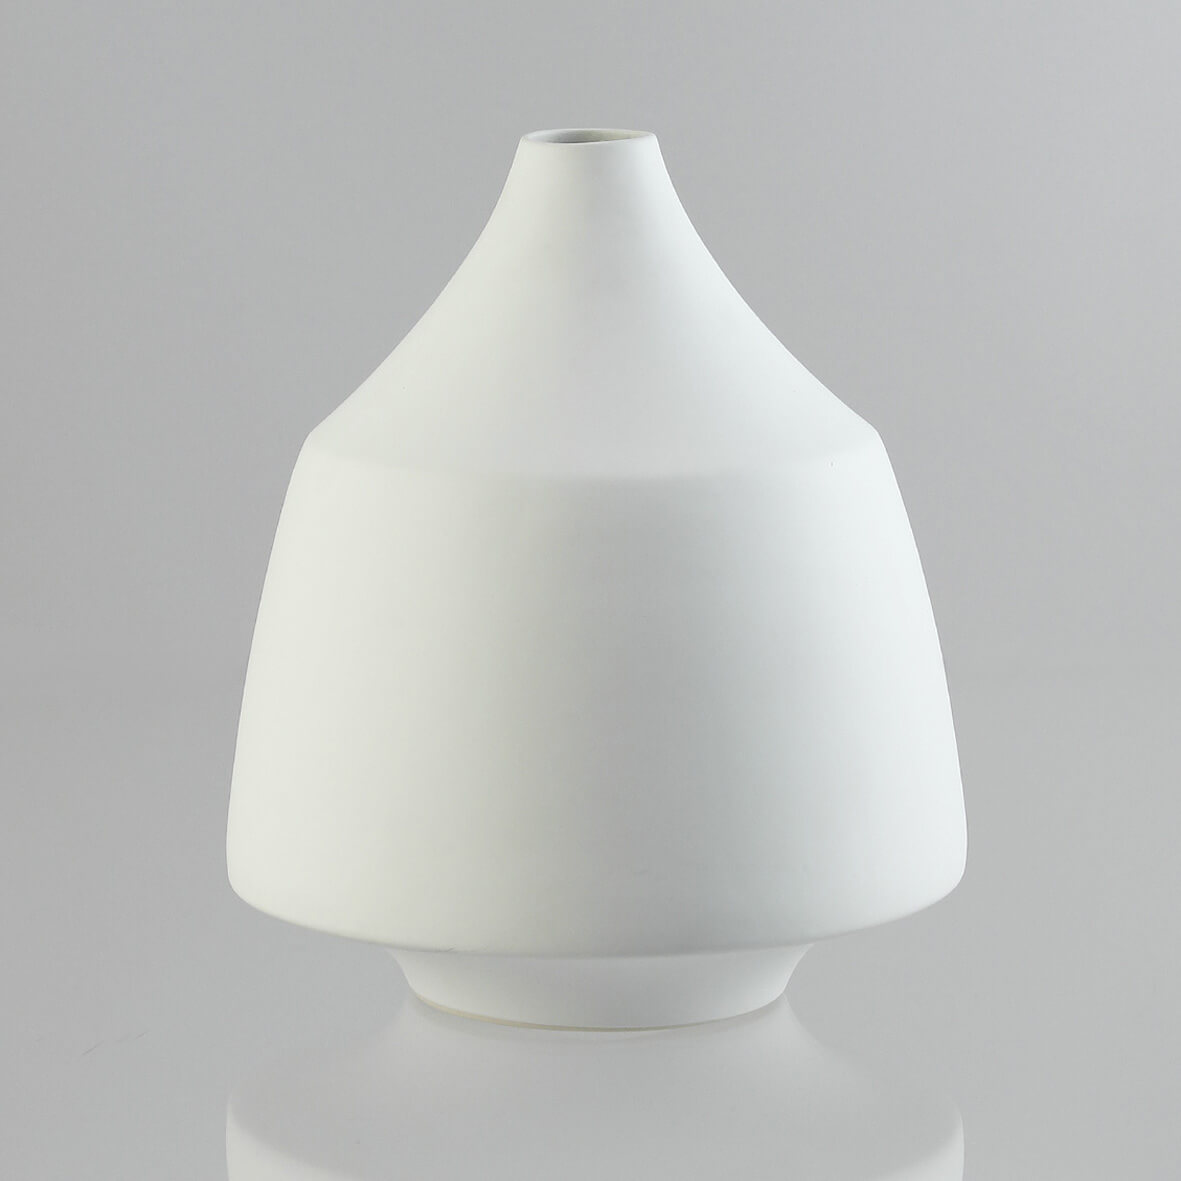 Vase aus Porzellan, organisch kegelförmig in weiß